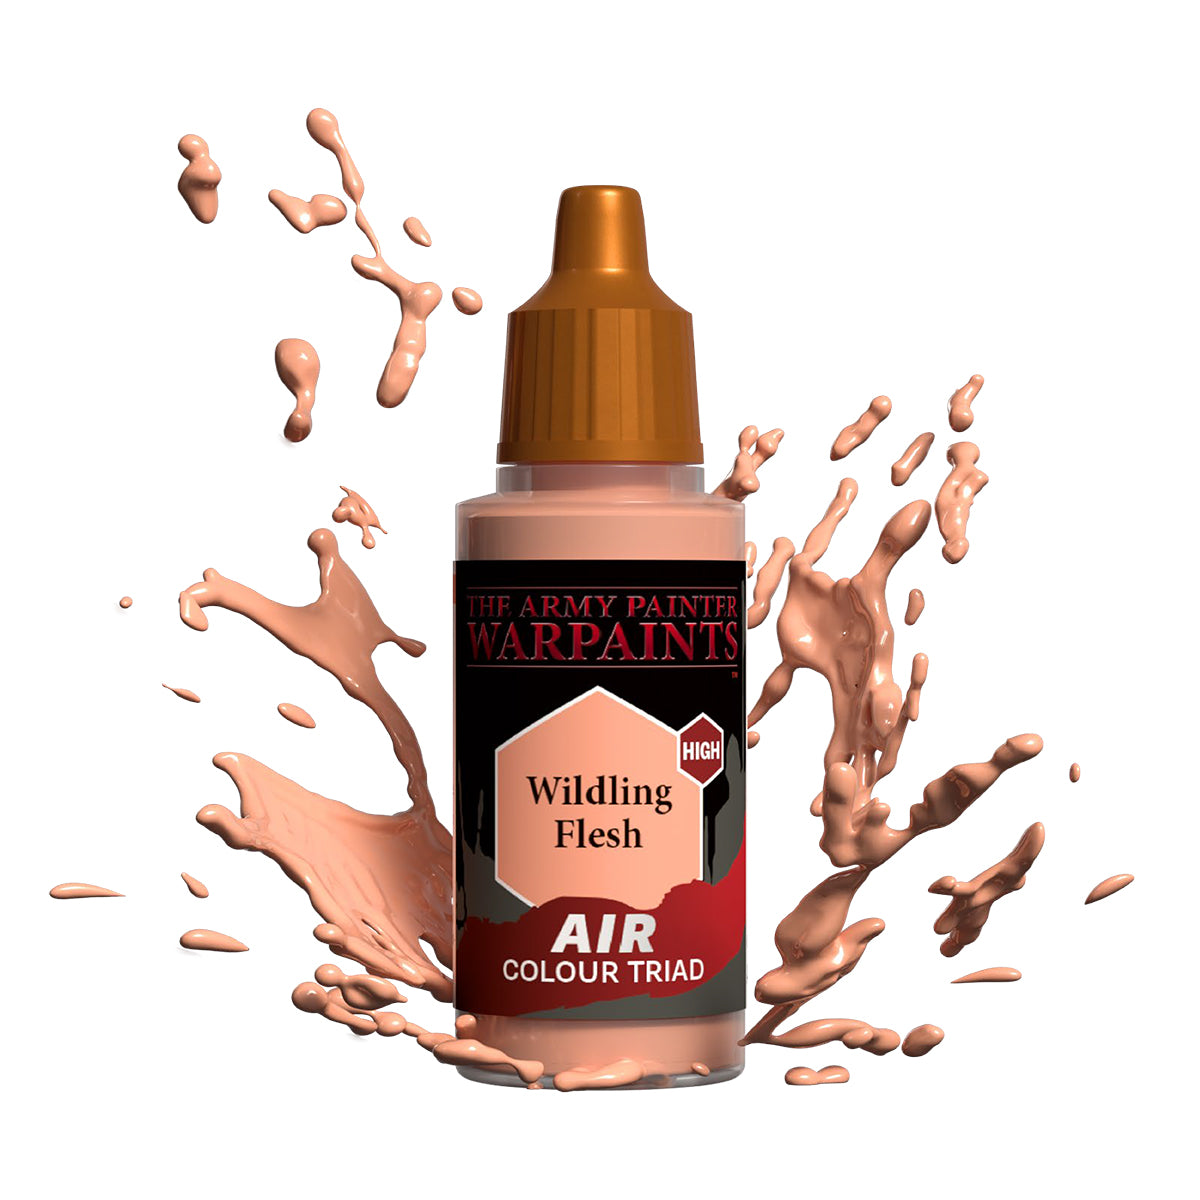 Warpaints Air: Wildling Flesh